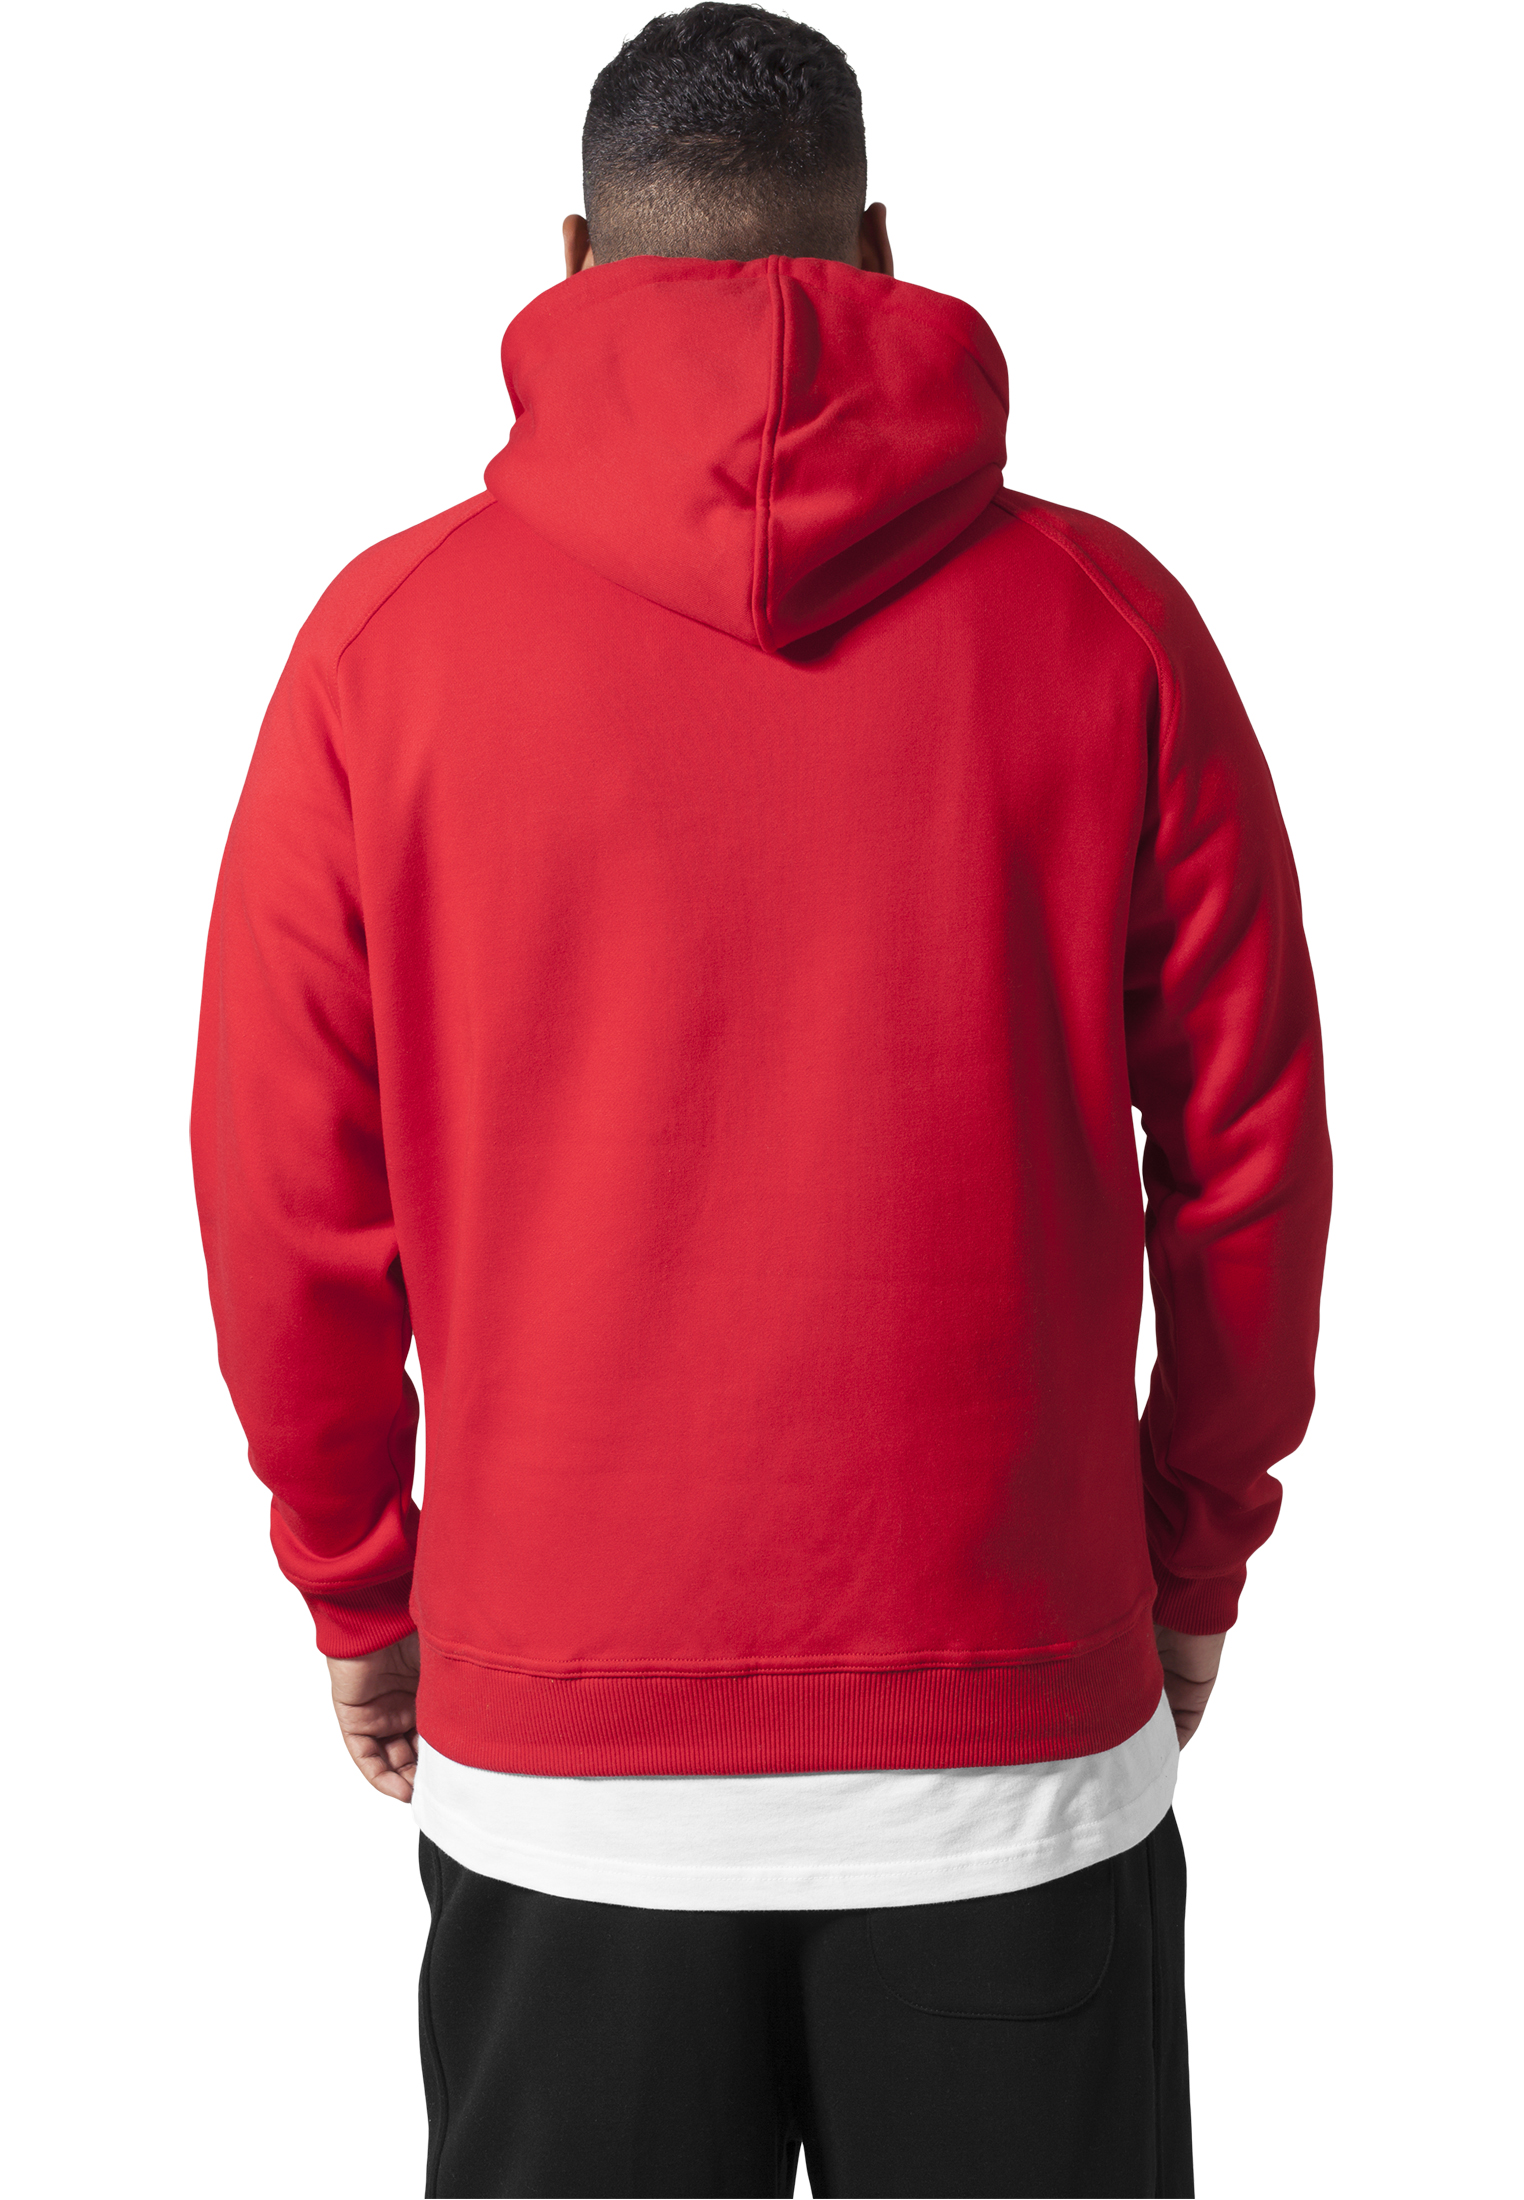 Urban Classics Men's Hooded Jumper Hoodie Sweatshirt Blank Hoody | eBay